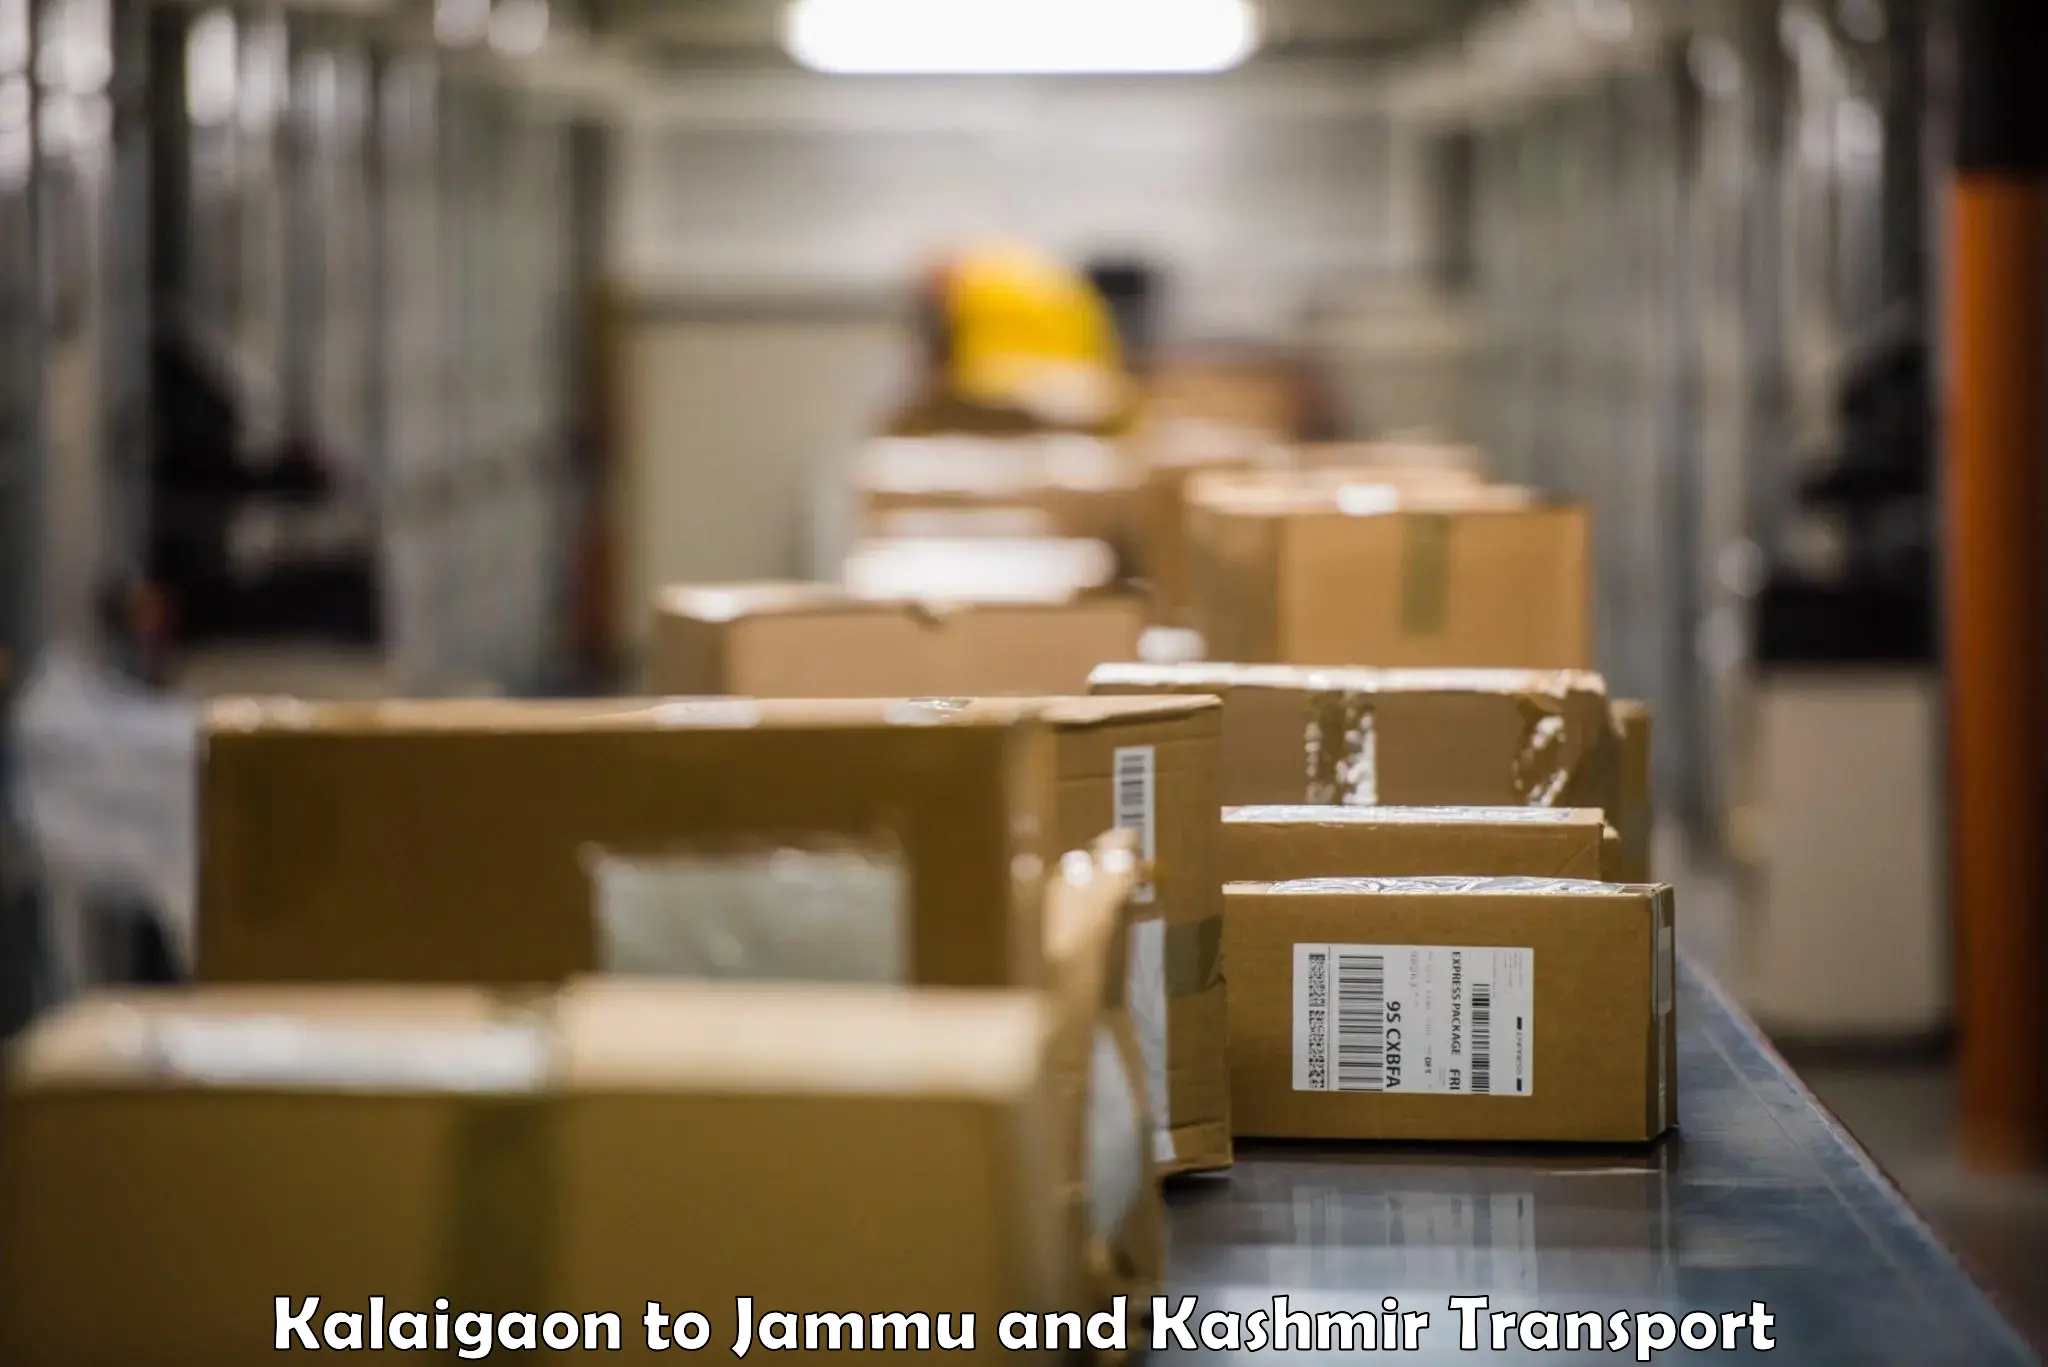 Shipping services Kalaigaon to Shopian